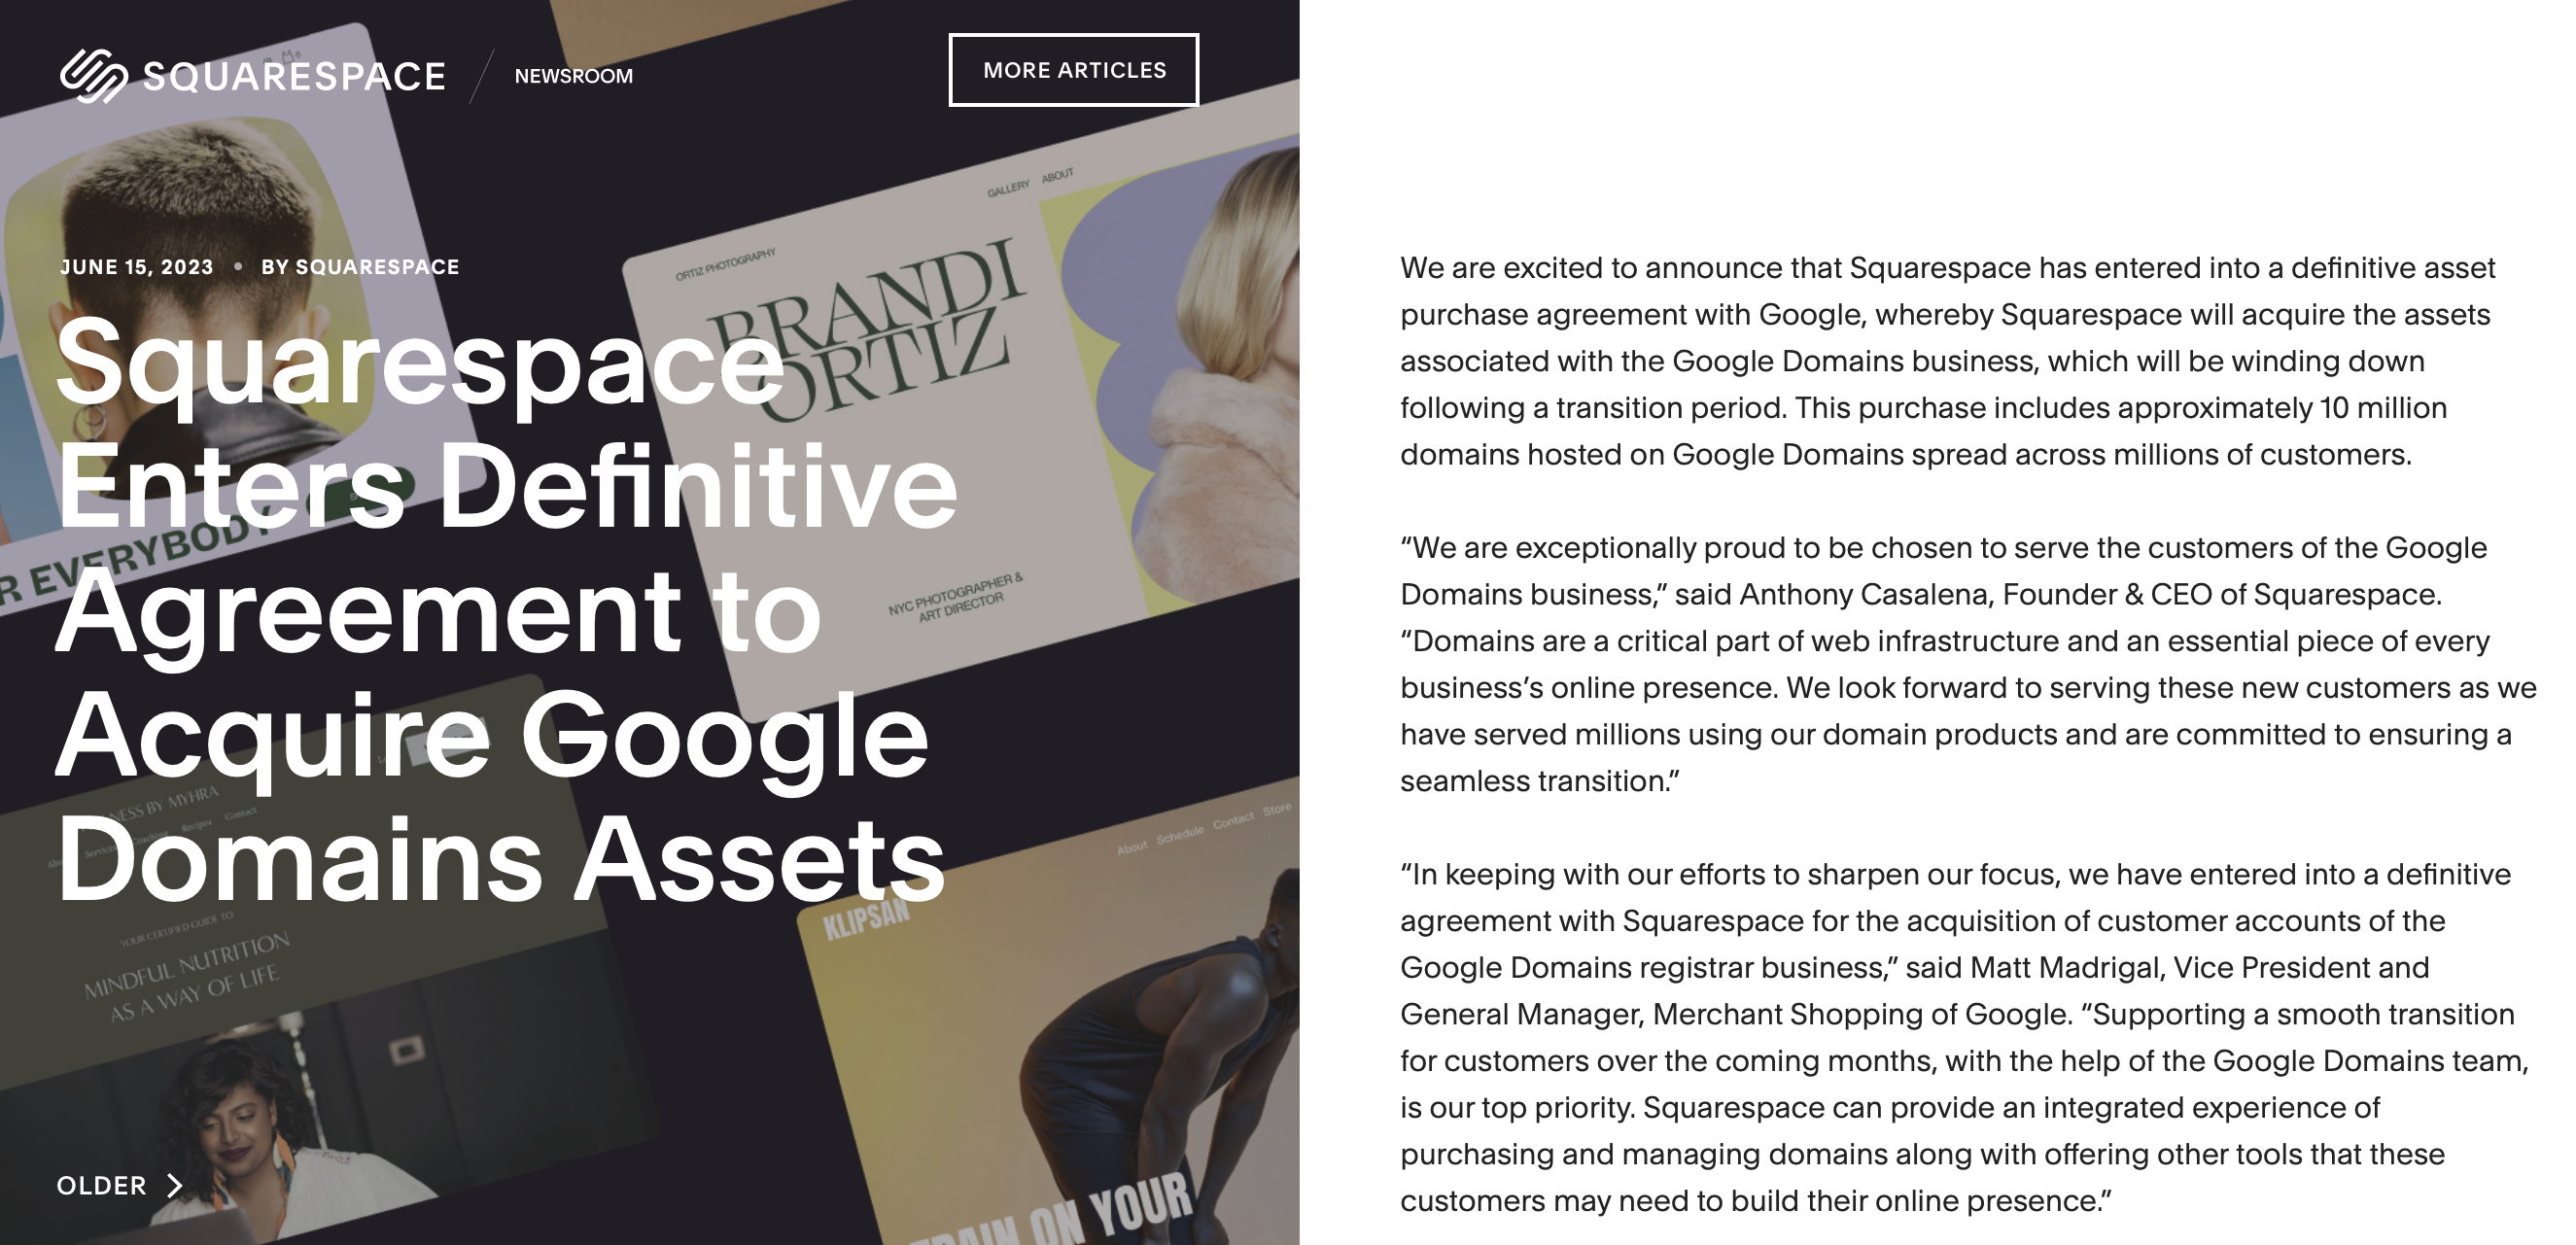 Squarespace announcement about acquiring Google Domains.